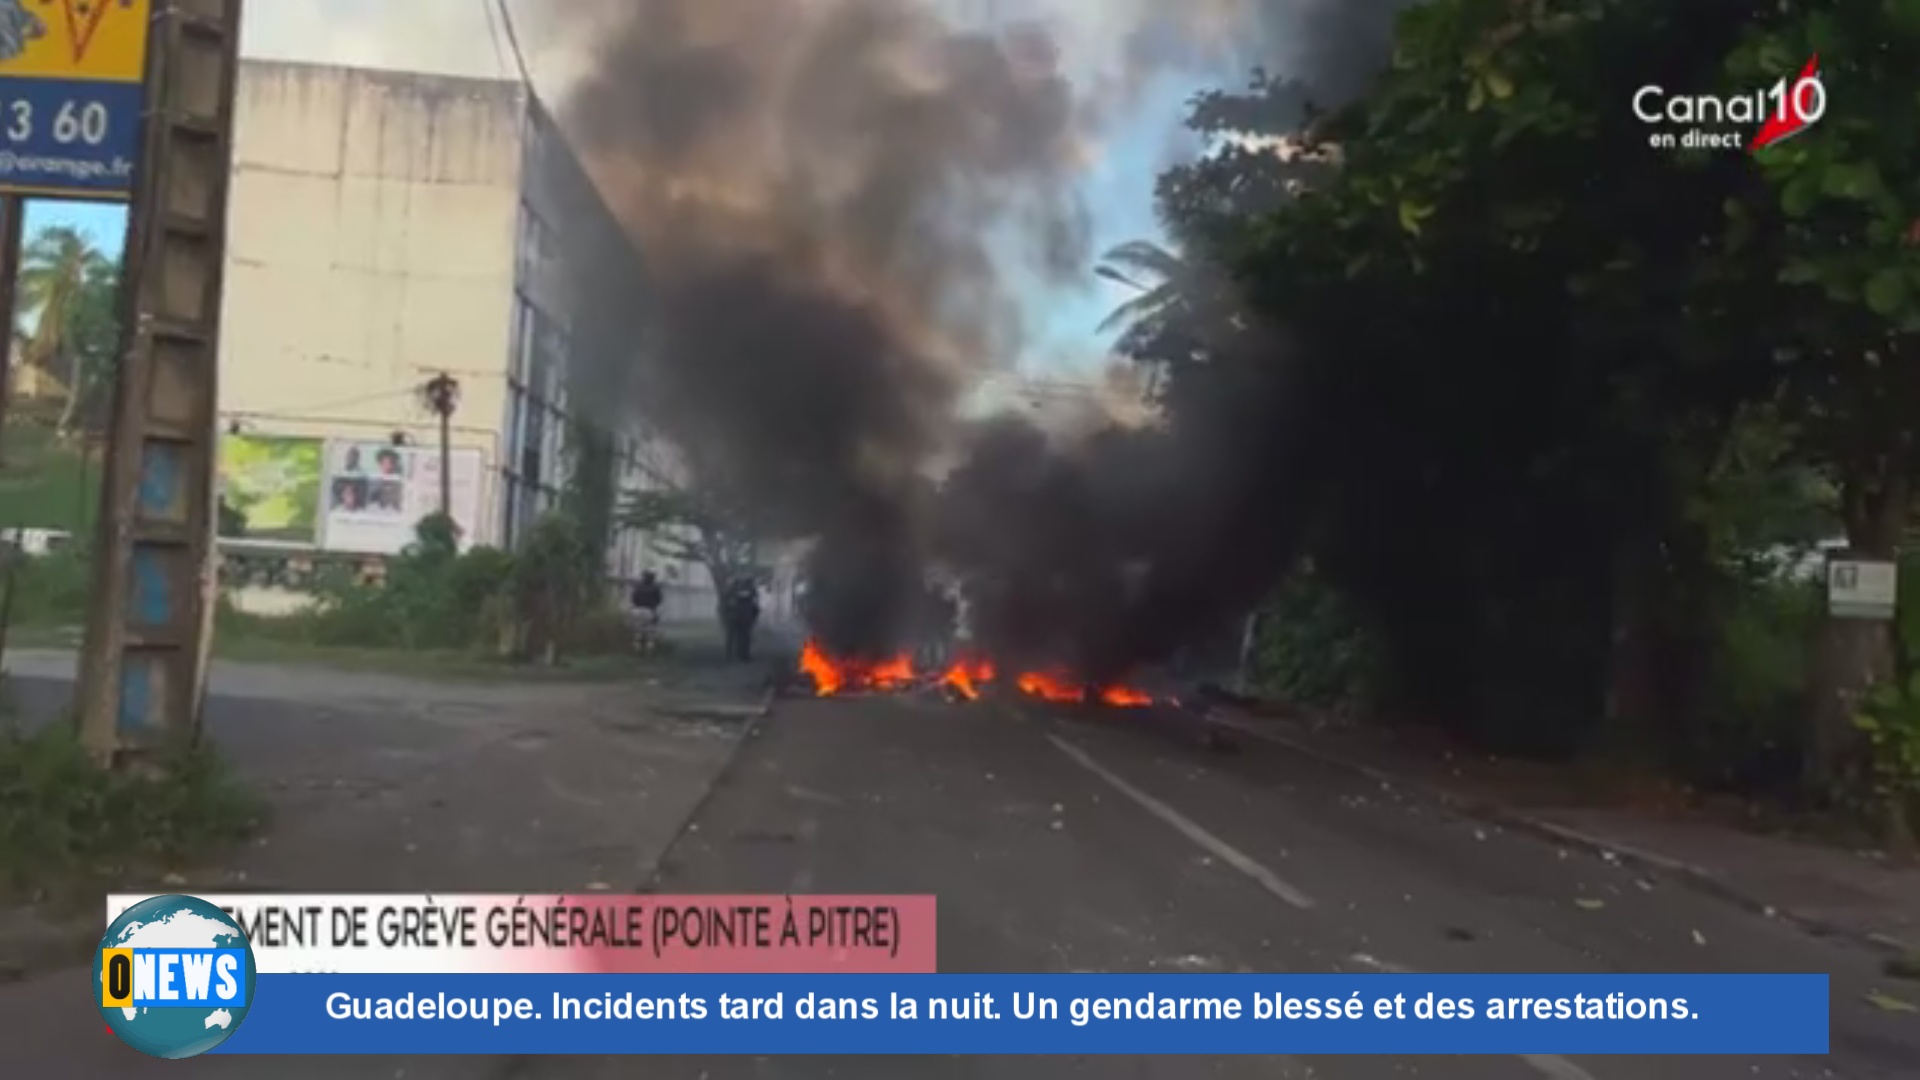 Onews Guadeloupe. Incidents tard dans la nuit. Un gendarme blessé et des arrestations.